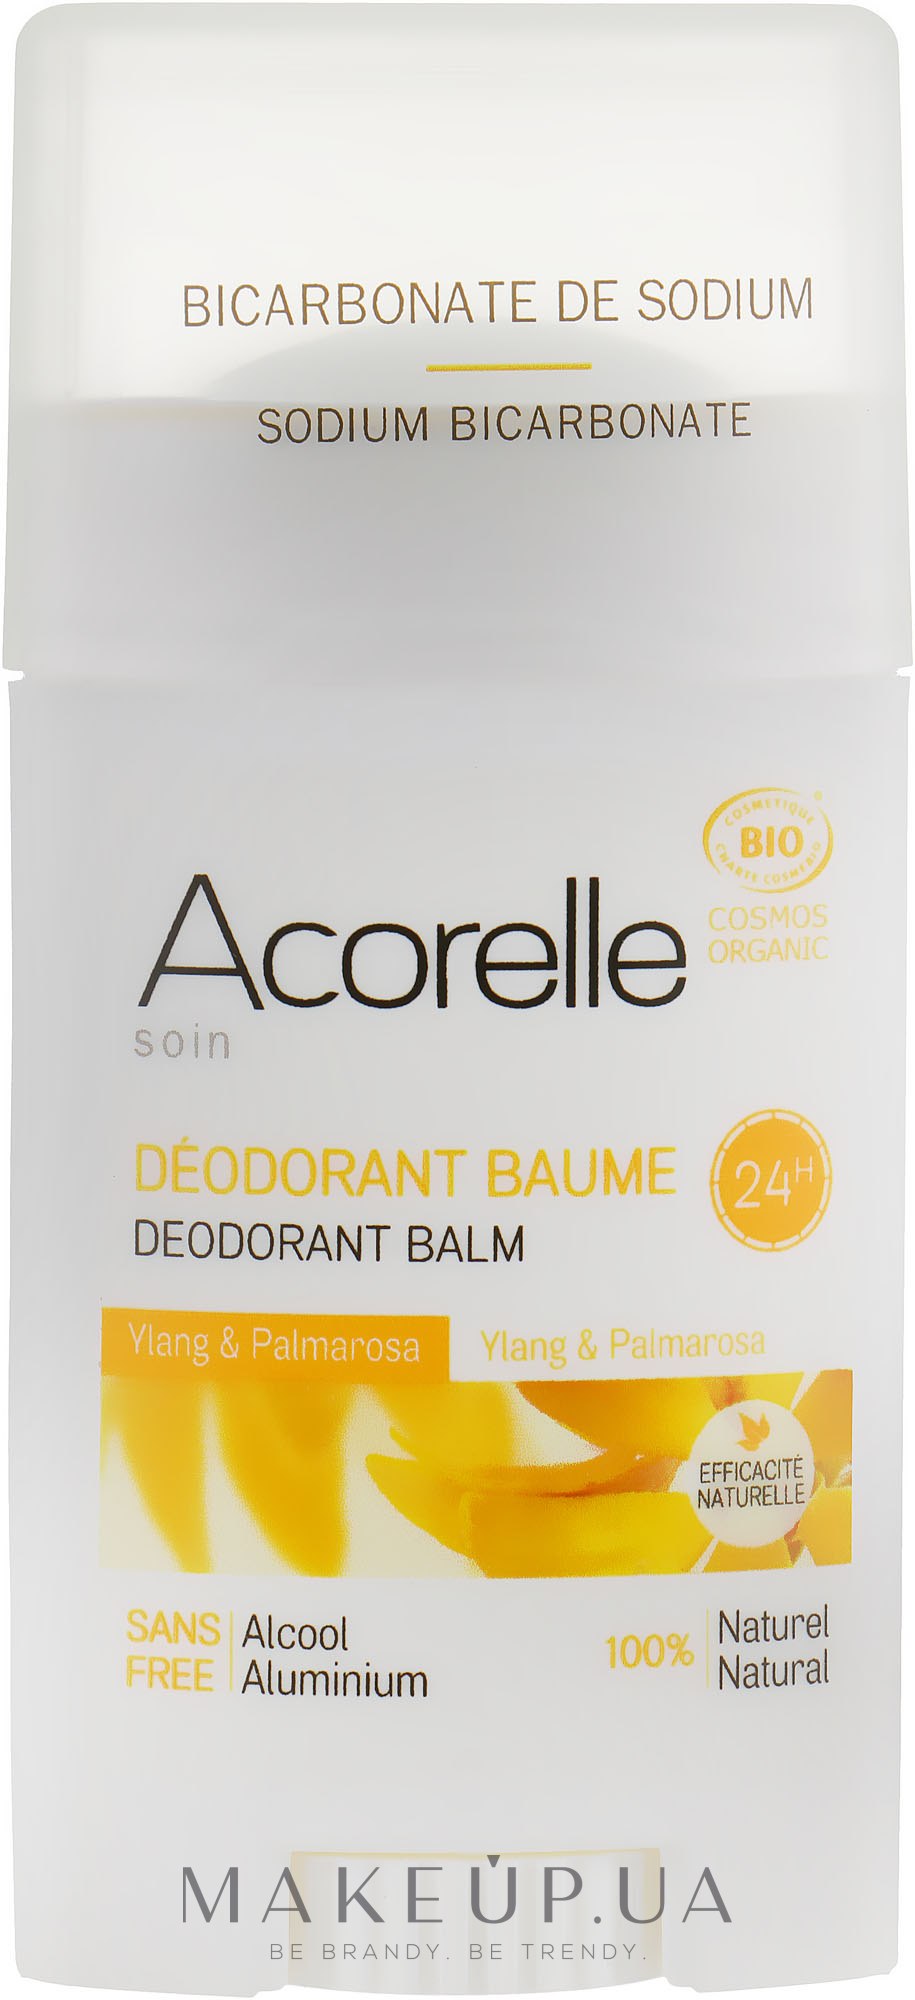 Дезодорант-бальзам у стіку "Іланг-іланг і пальмароза" - Acorelle Deodorant Balm — фото 40g